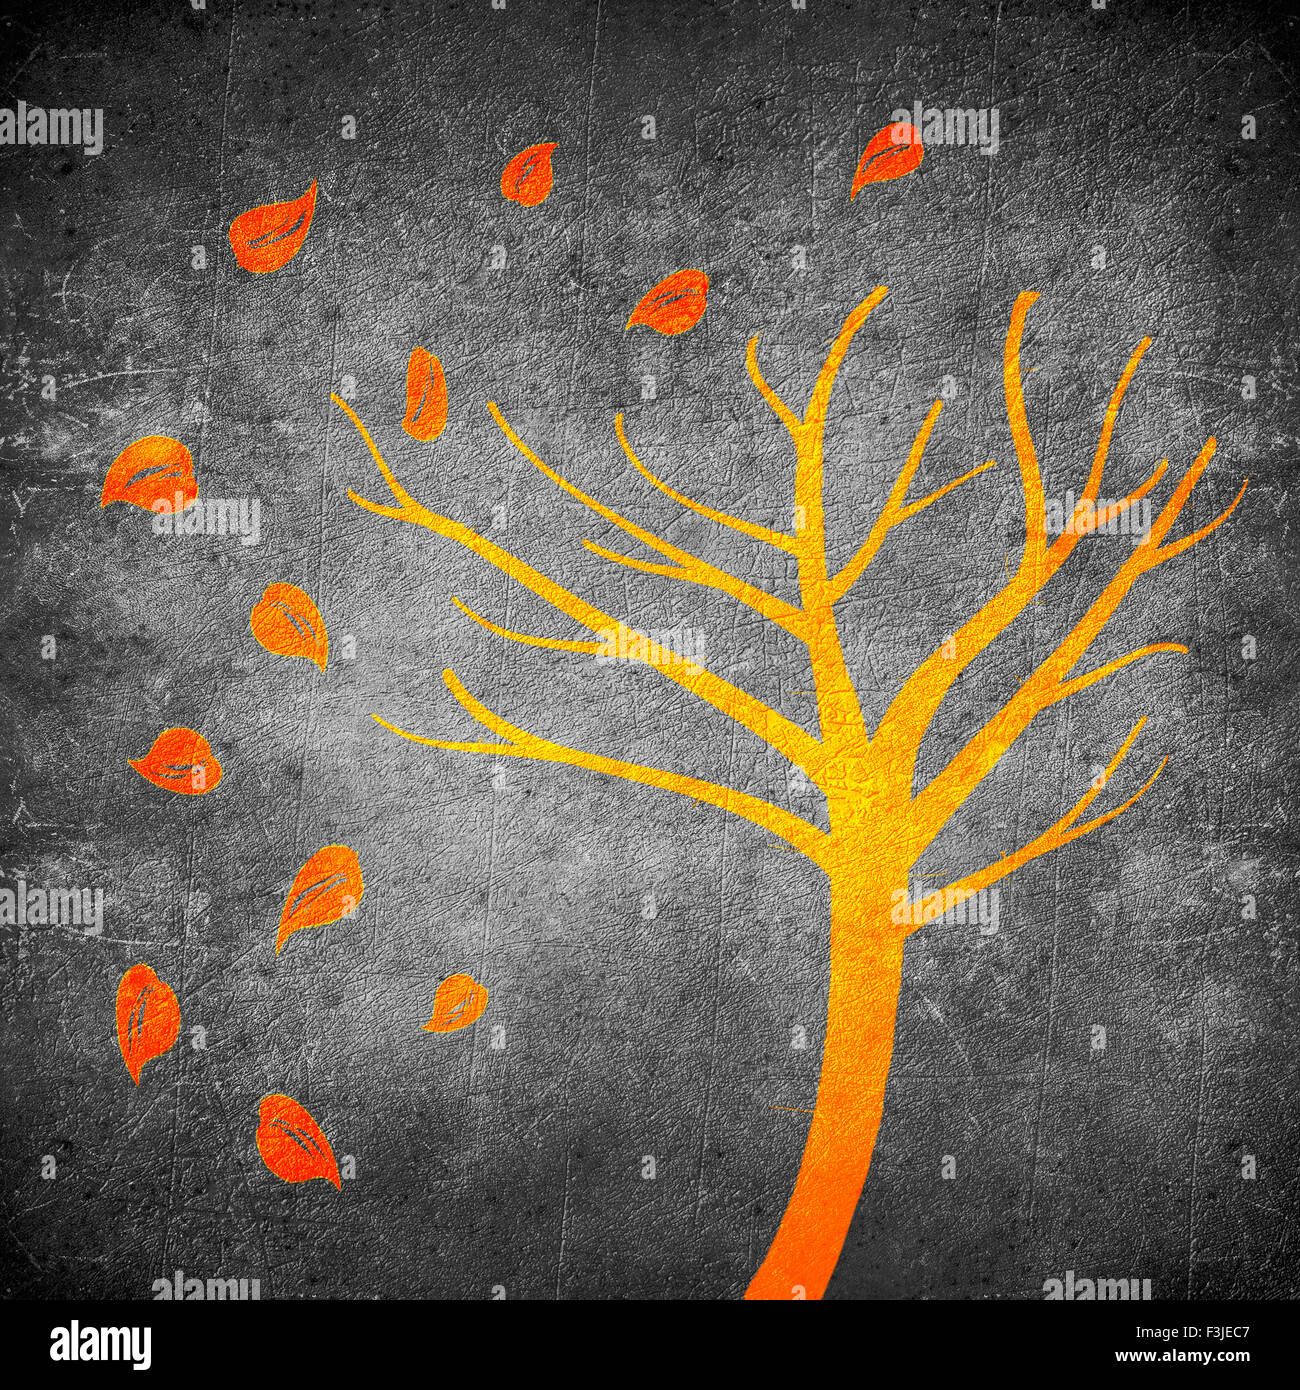 orange tree and leaves digital illustration Stock Photo